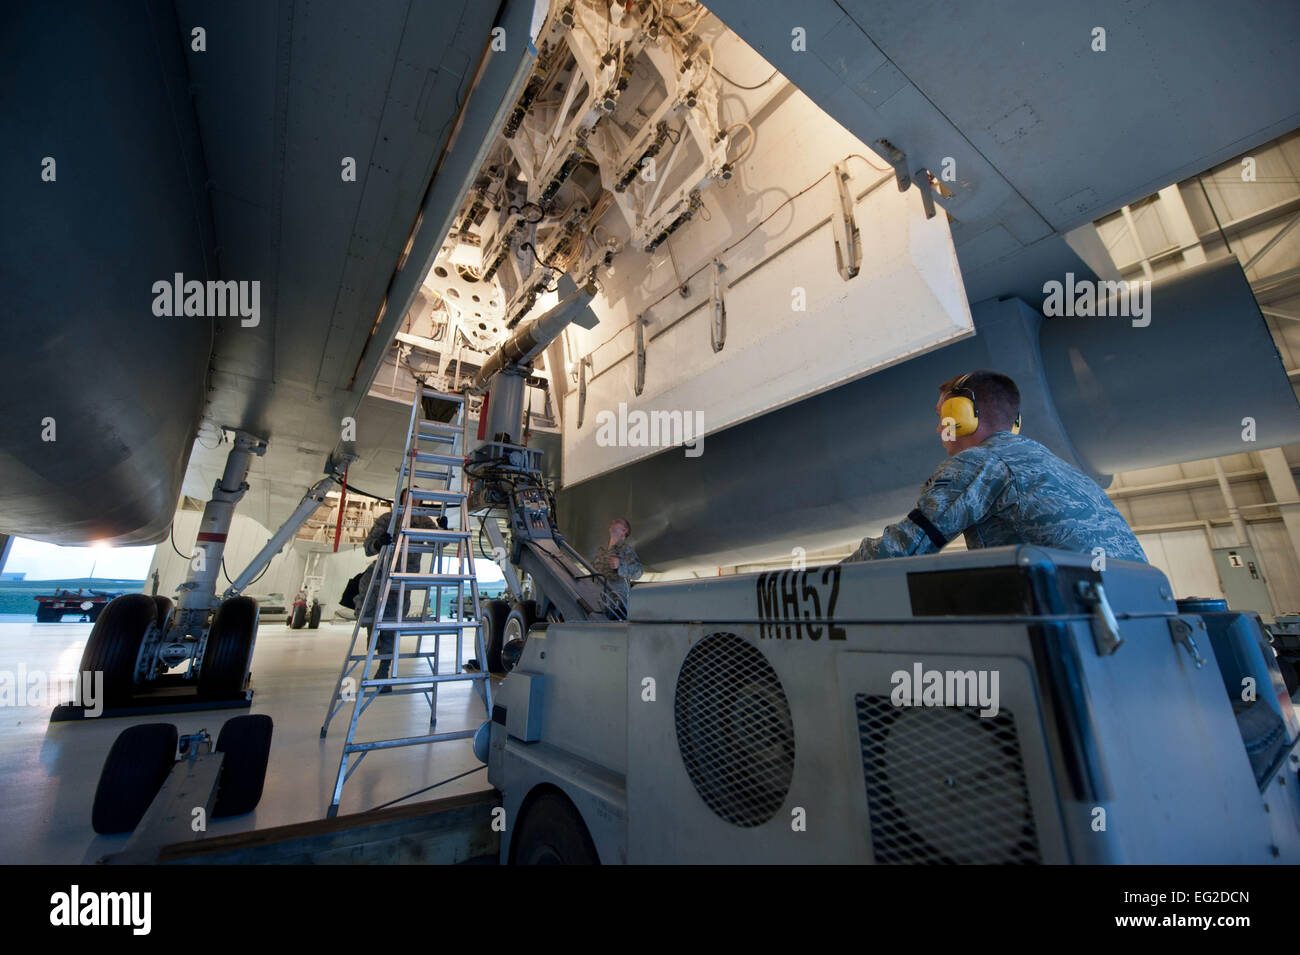 Carga de los miembros del equipo de la tripulación asignada al 28º Escuadrón de Mantenimiento de aviones de carga de la unidad de bomba guiada inerte en un simulacro de bombardero B-1 simulador de carga en el Centro de Formación de la tripulación en la base de la Fuerza Aérea Ellsworth, Dakota del Sur, el 13 de agosto de 2013. Después de cada tarea y cargadores de armas realizar controles de calidad para verificar que todos los sistemas de armas están en funcionamiento antes de que las misiones de B-1. Aerotécnico de Primera Clase Zachary Hada Foto de stock